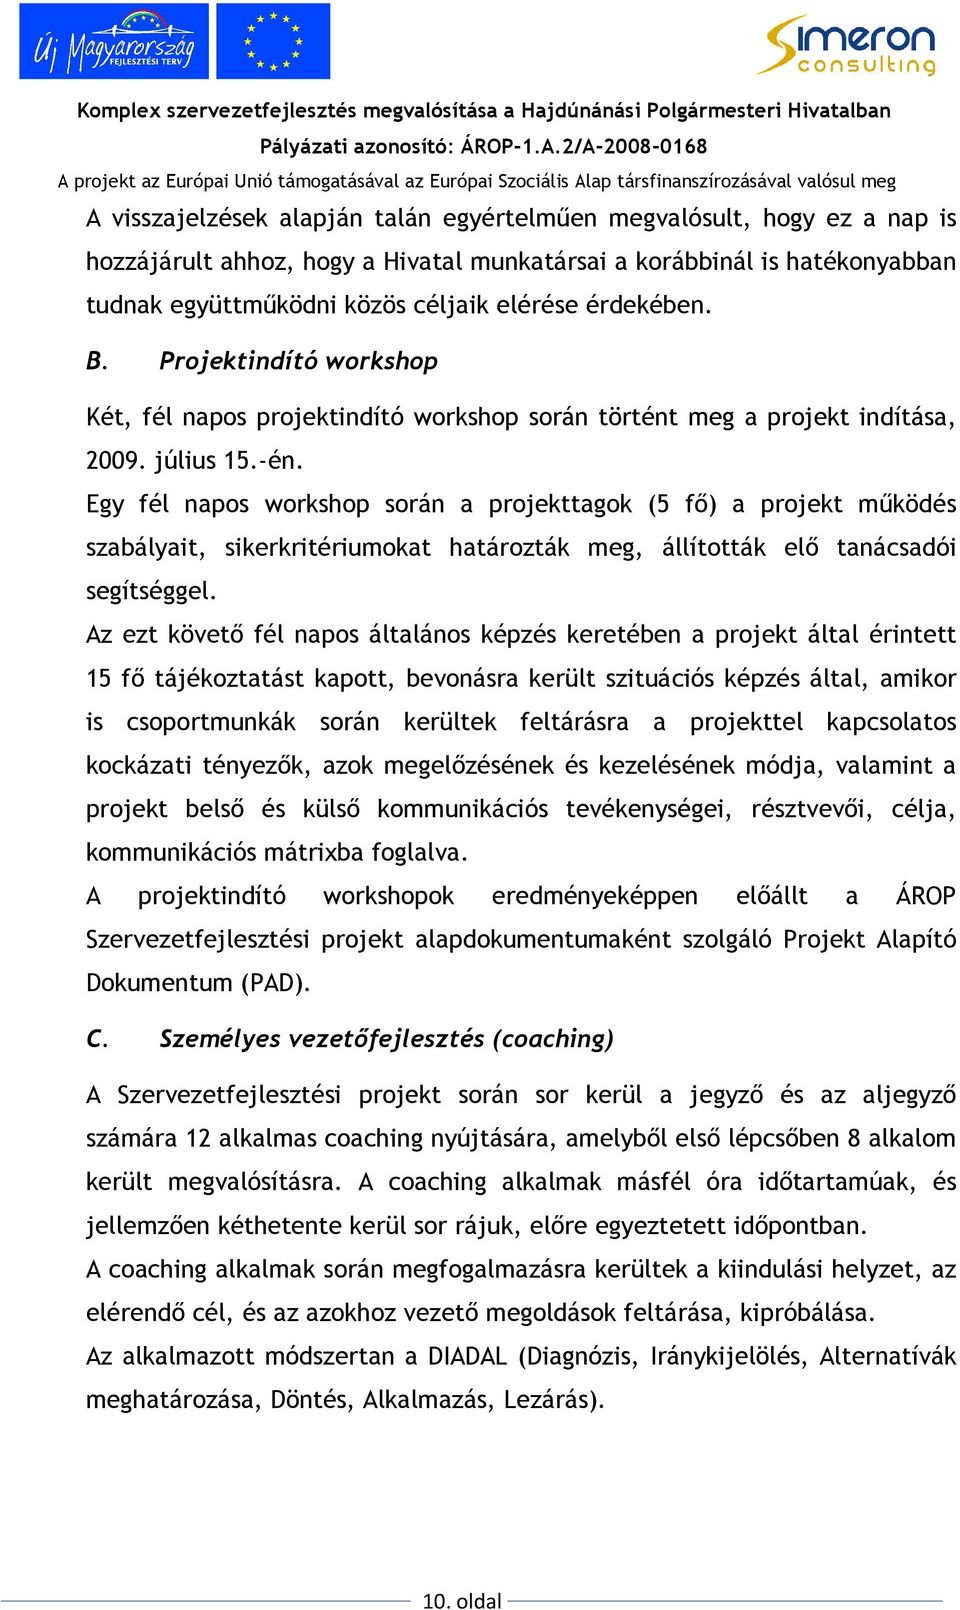 Egy fél napos workshop során a projekttagok (5 fı) a projekt mőködés szabályait, sikerkritériumokat határozták meg, állították elı tanácsadói segítséggel.